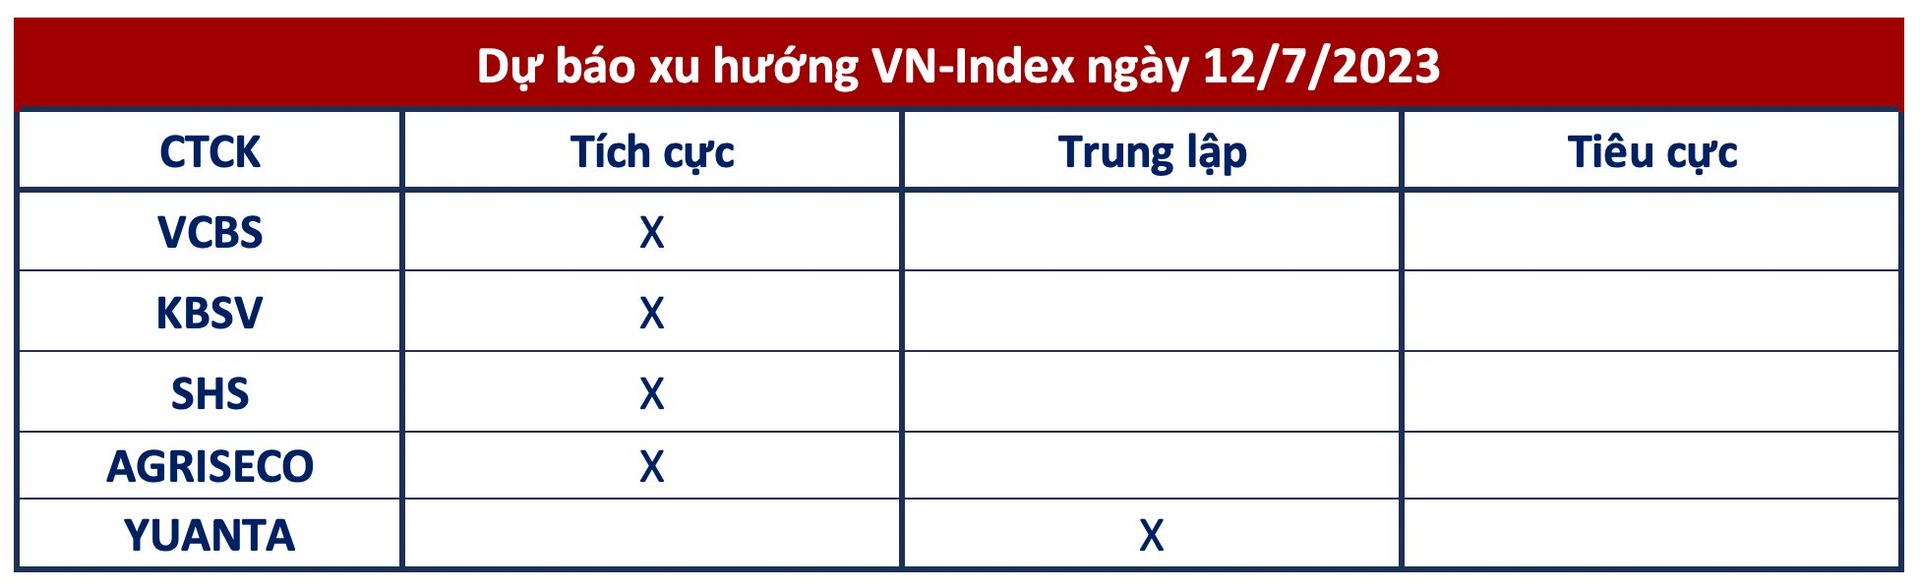 Góc nhìn CTCK: Mạch tăng điểm nối dài, VN-Index hướng lên khu vực 1.170 điểm - Ảnh 1.